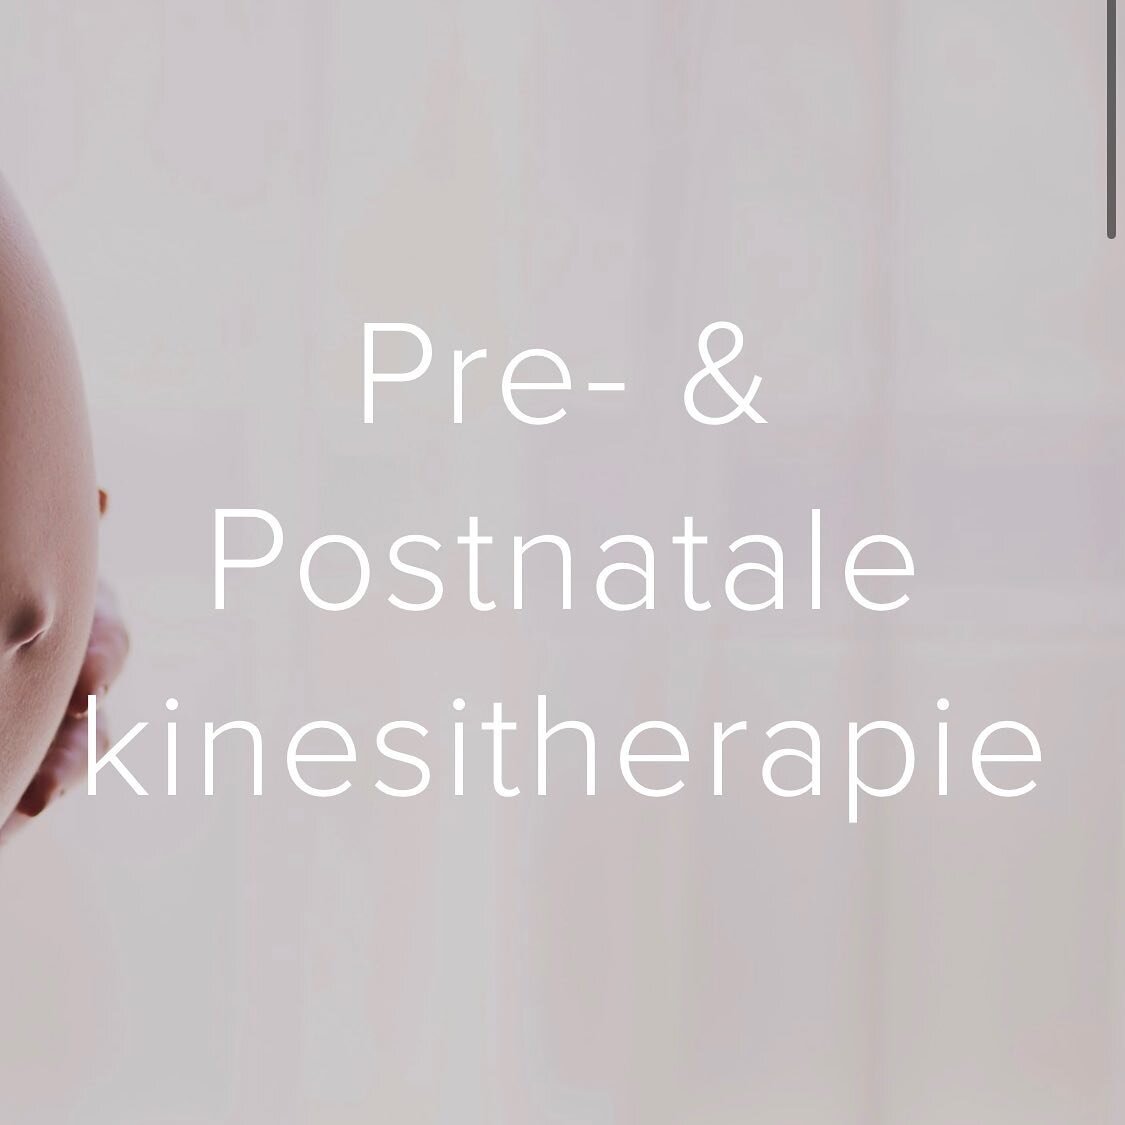 Specialisatie in de kijker: perinatale kinesitherapie.